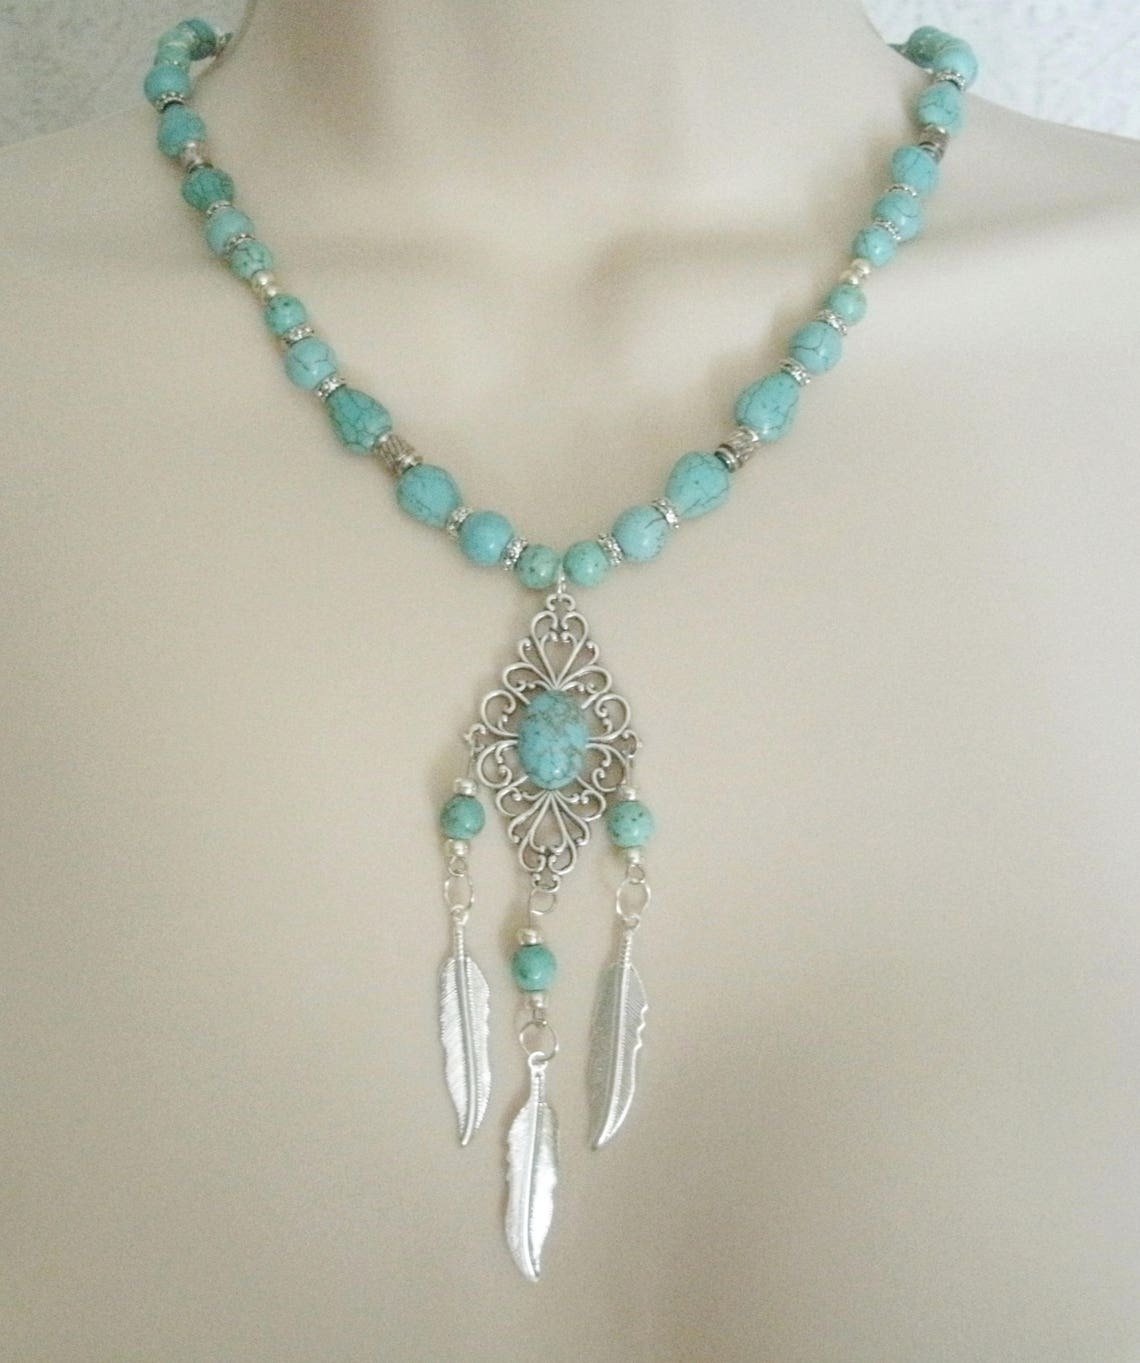 Turquoise Necklace Southwestern Jewelry Southwest Jewelry Etsy